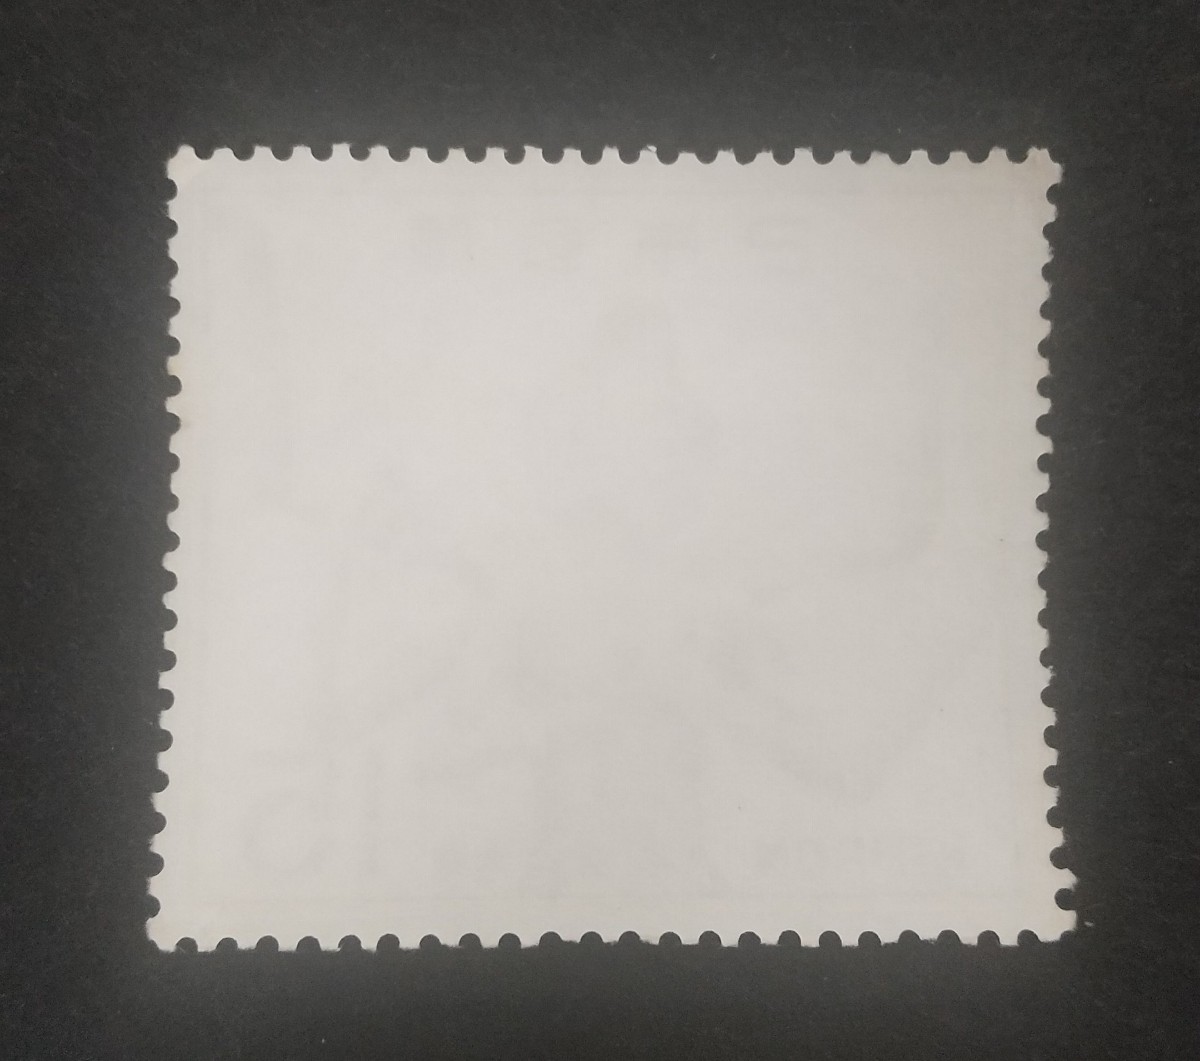 記念切手 国宝シリーズ 興福寺阿修羅 1968 未使用品 (ST-TG)の画像2